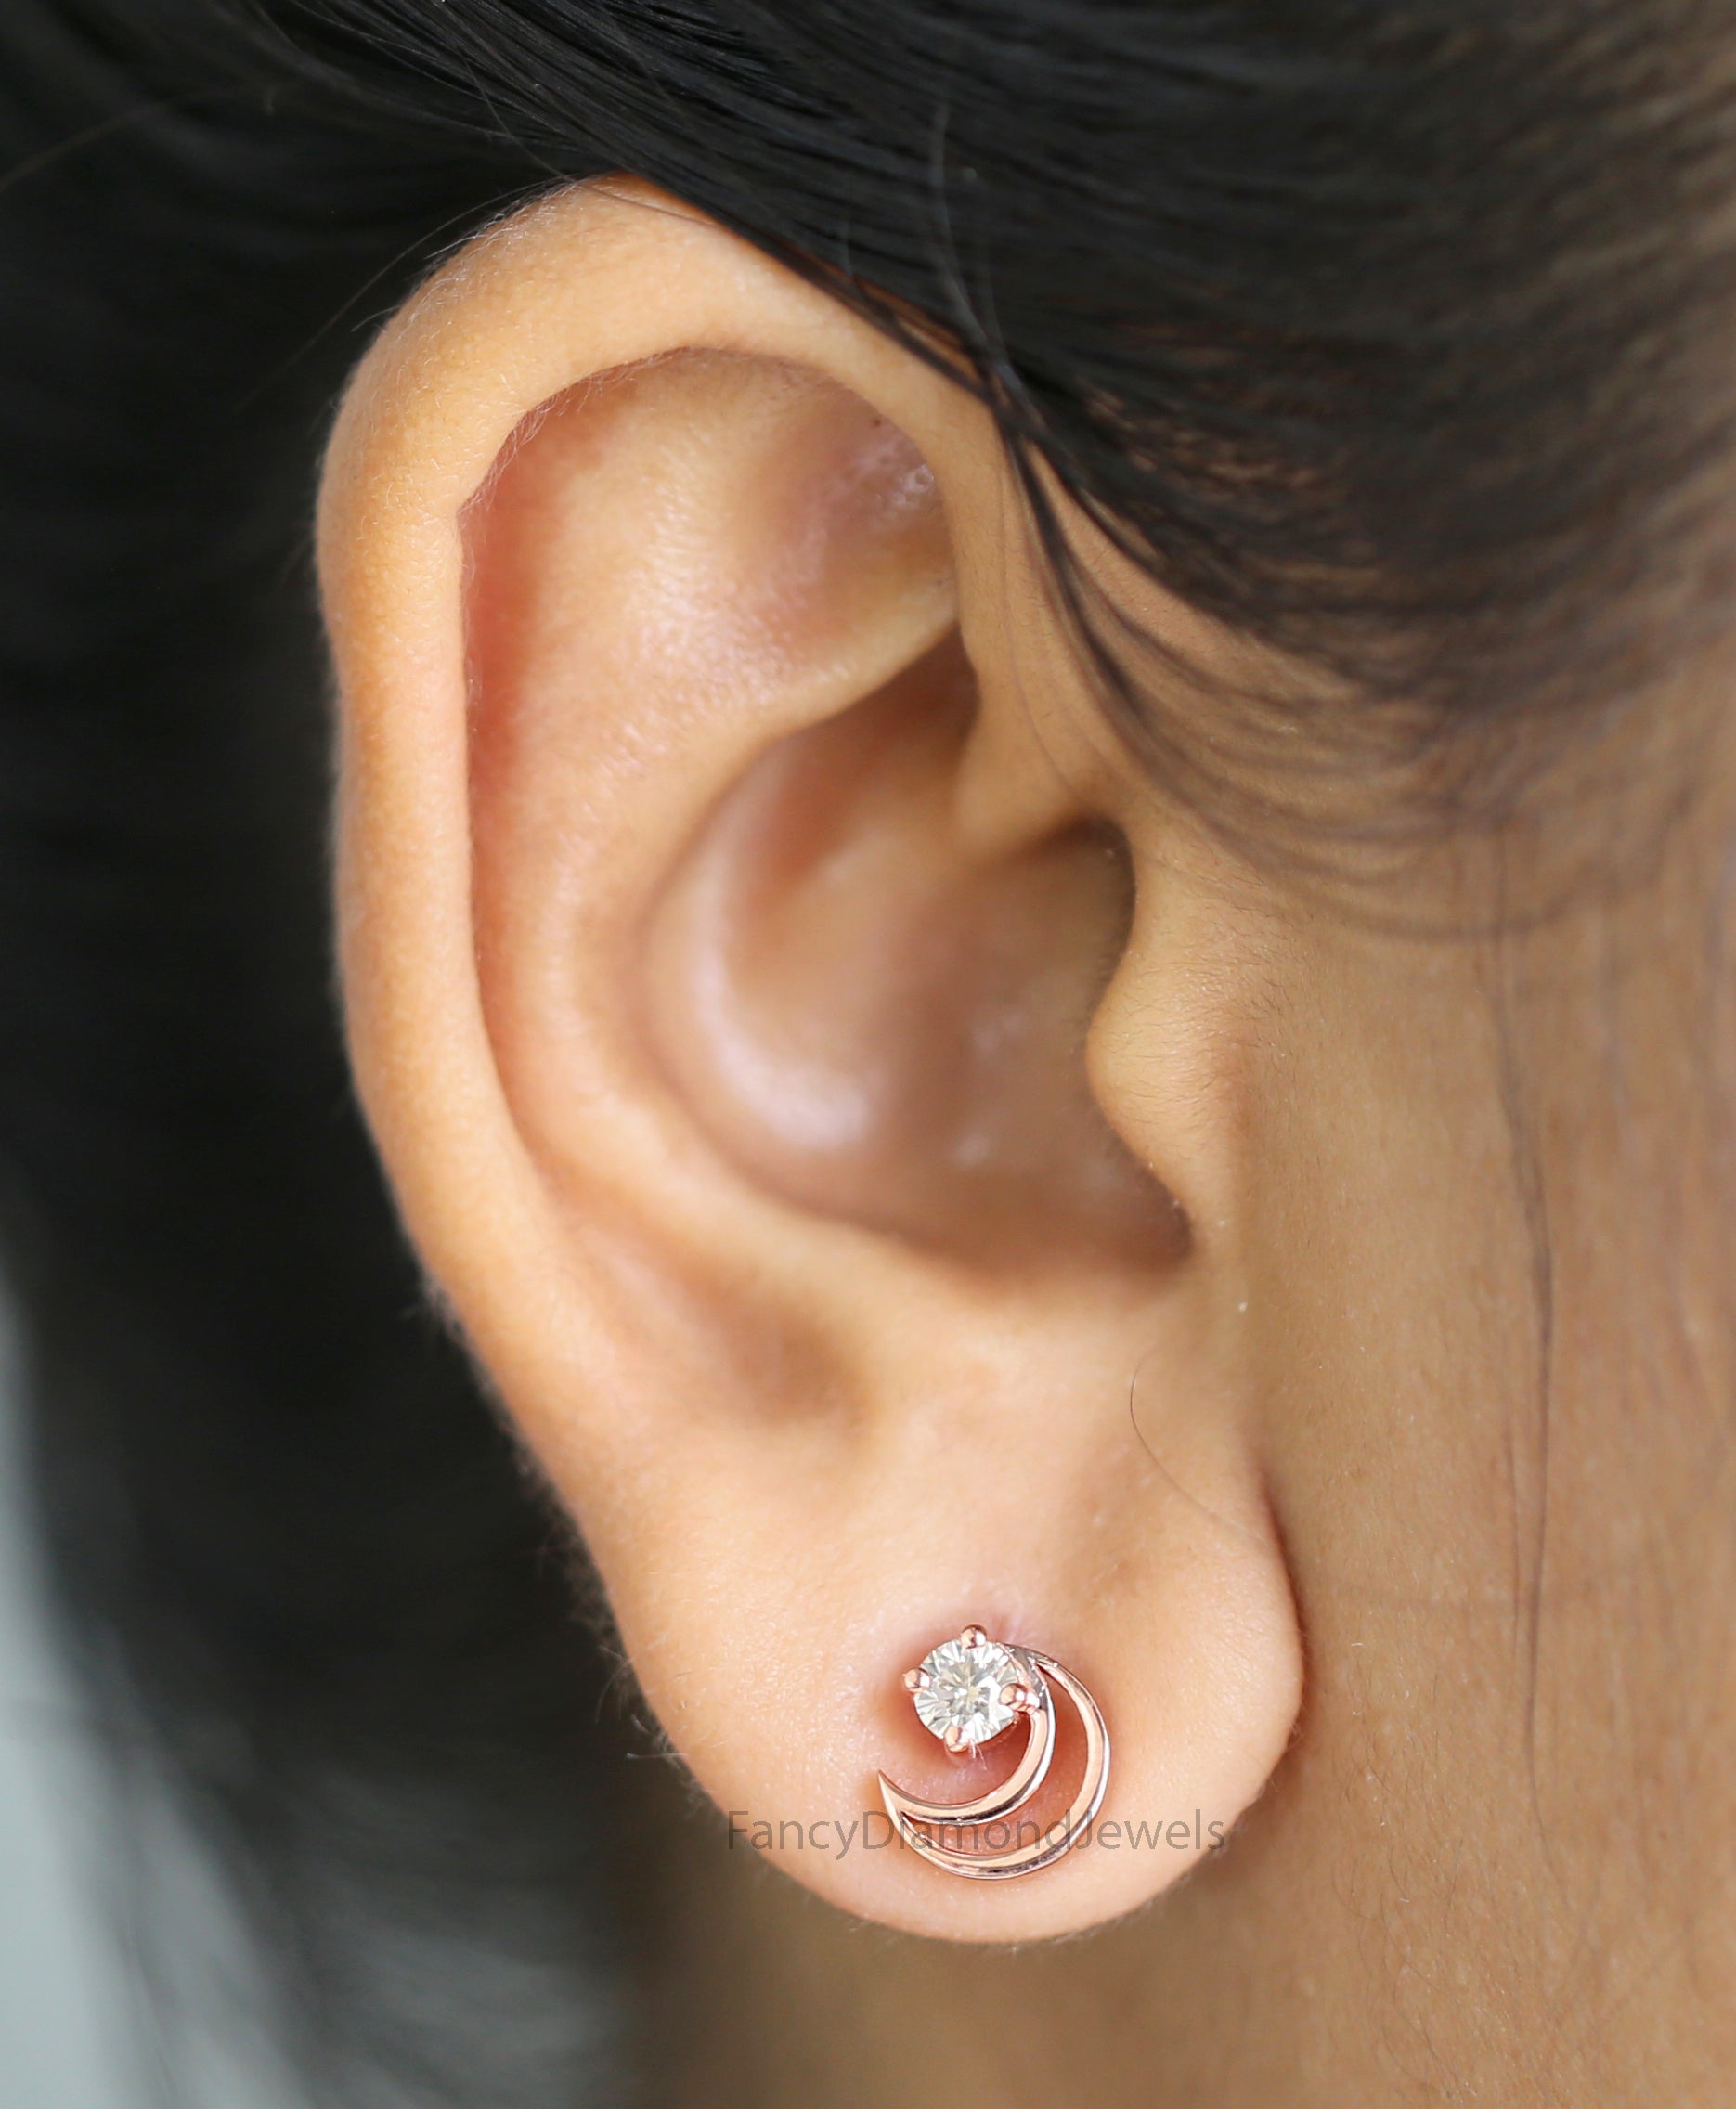 Round White Diamond Earring, Round Brilliant Shape Earring, Prong Earring, Engagement Earring, Earlobe Earrings, Earrings Jewelry, KDN1863